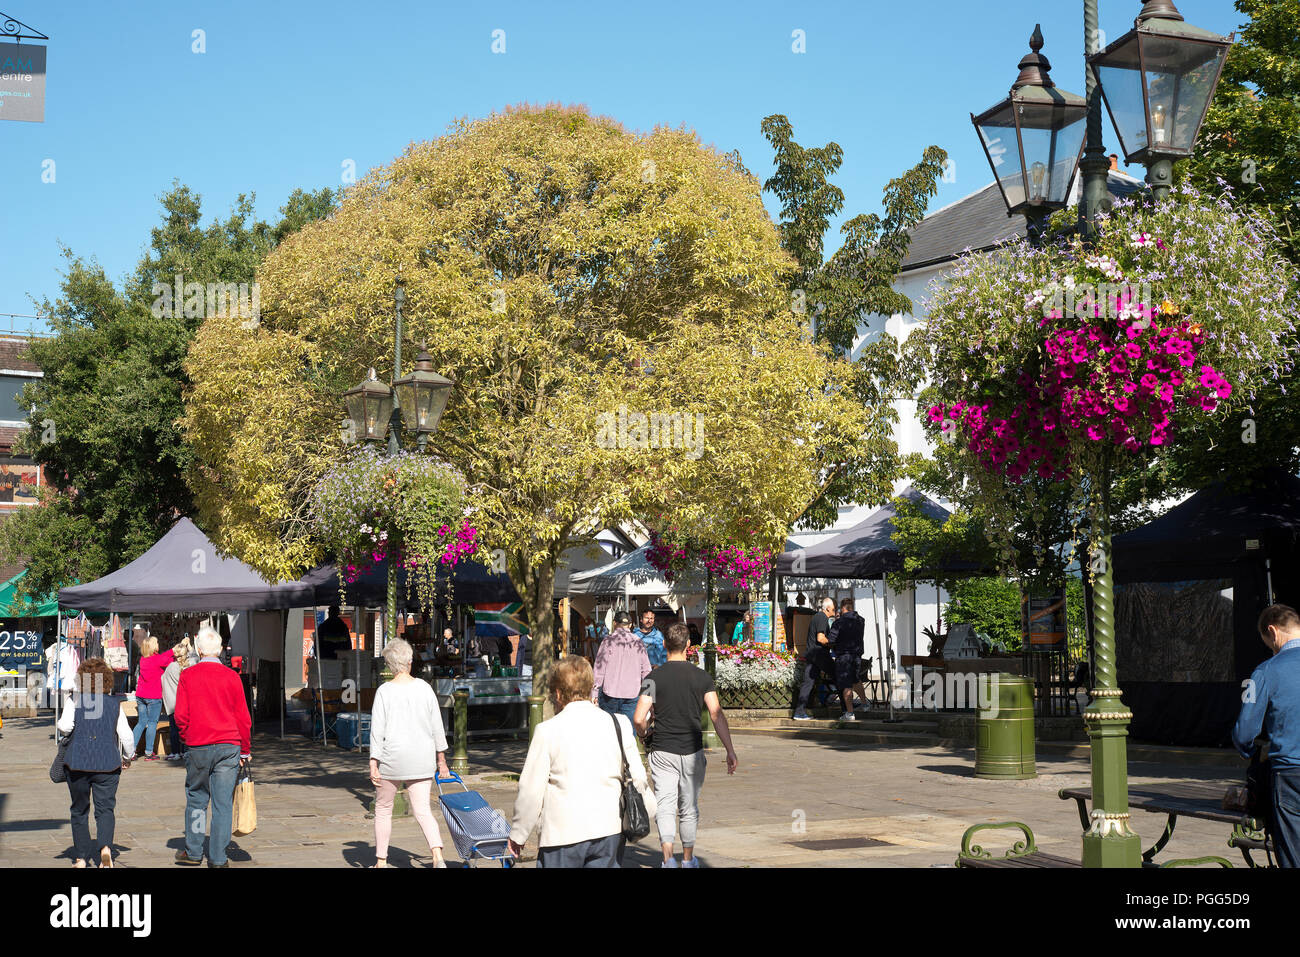 Das Carfax in Horsham Stadtzentrum, Sommerblumen in Ampeln und die Menschen auf dem Markt. Stockfoto